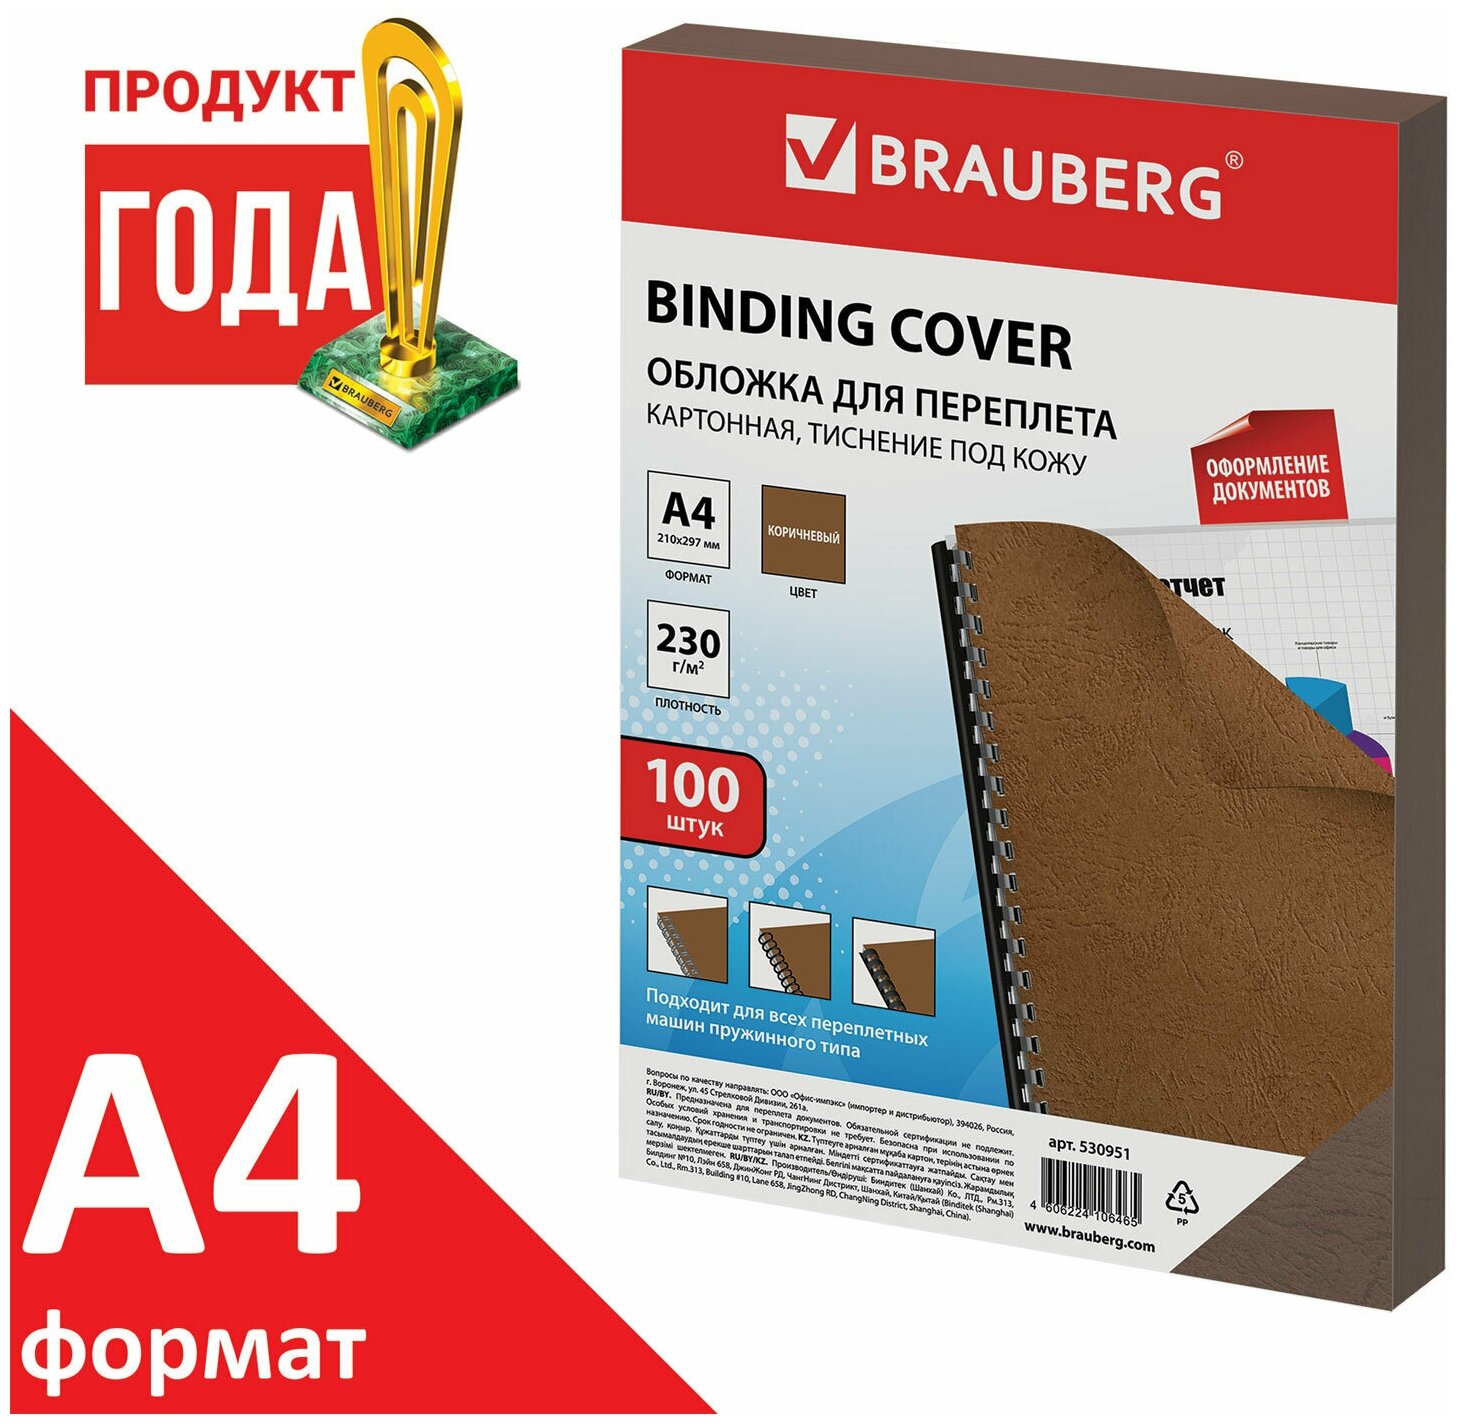 Обложки картонные для переплета Brauberg А4, 100 шт, тиснение под кожу, 230 г/м2, коричневые (530951)